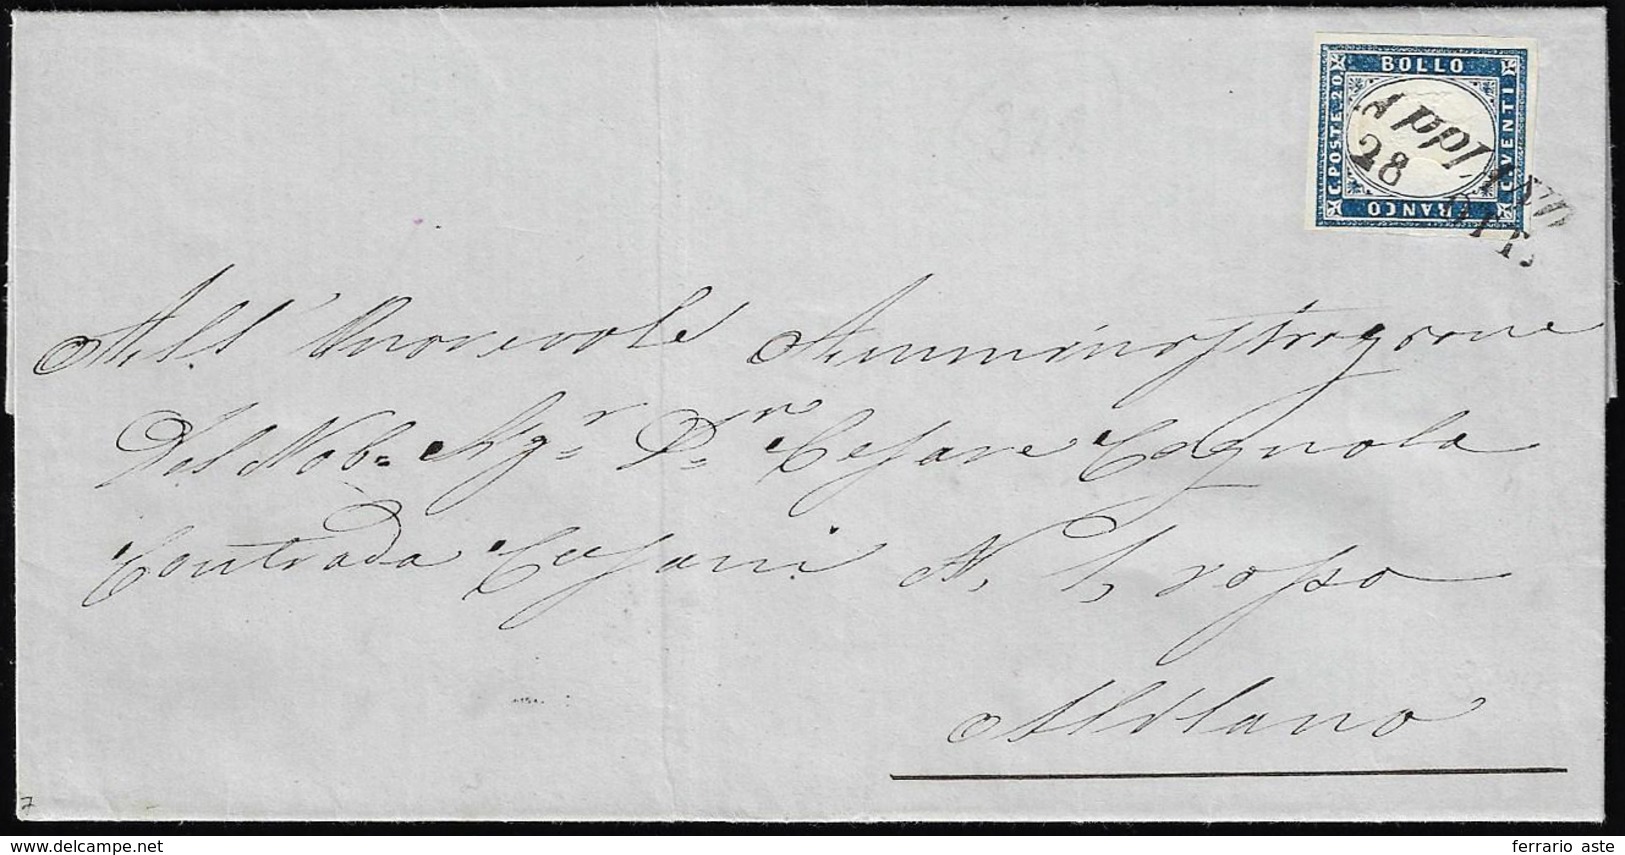 APPIANO, SI Punti 7 - 20 Cent. (Sardegna 15Ca), Perfetto, Su Lettera Del 28/10/1861 Per Milano.... - Lombardy-Venetia